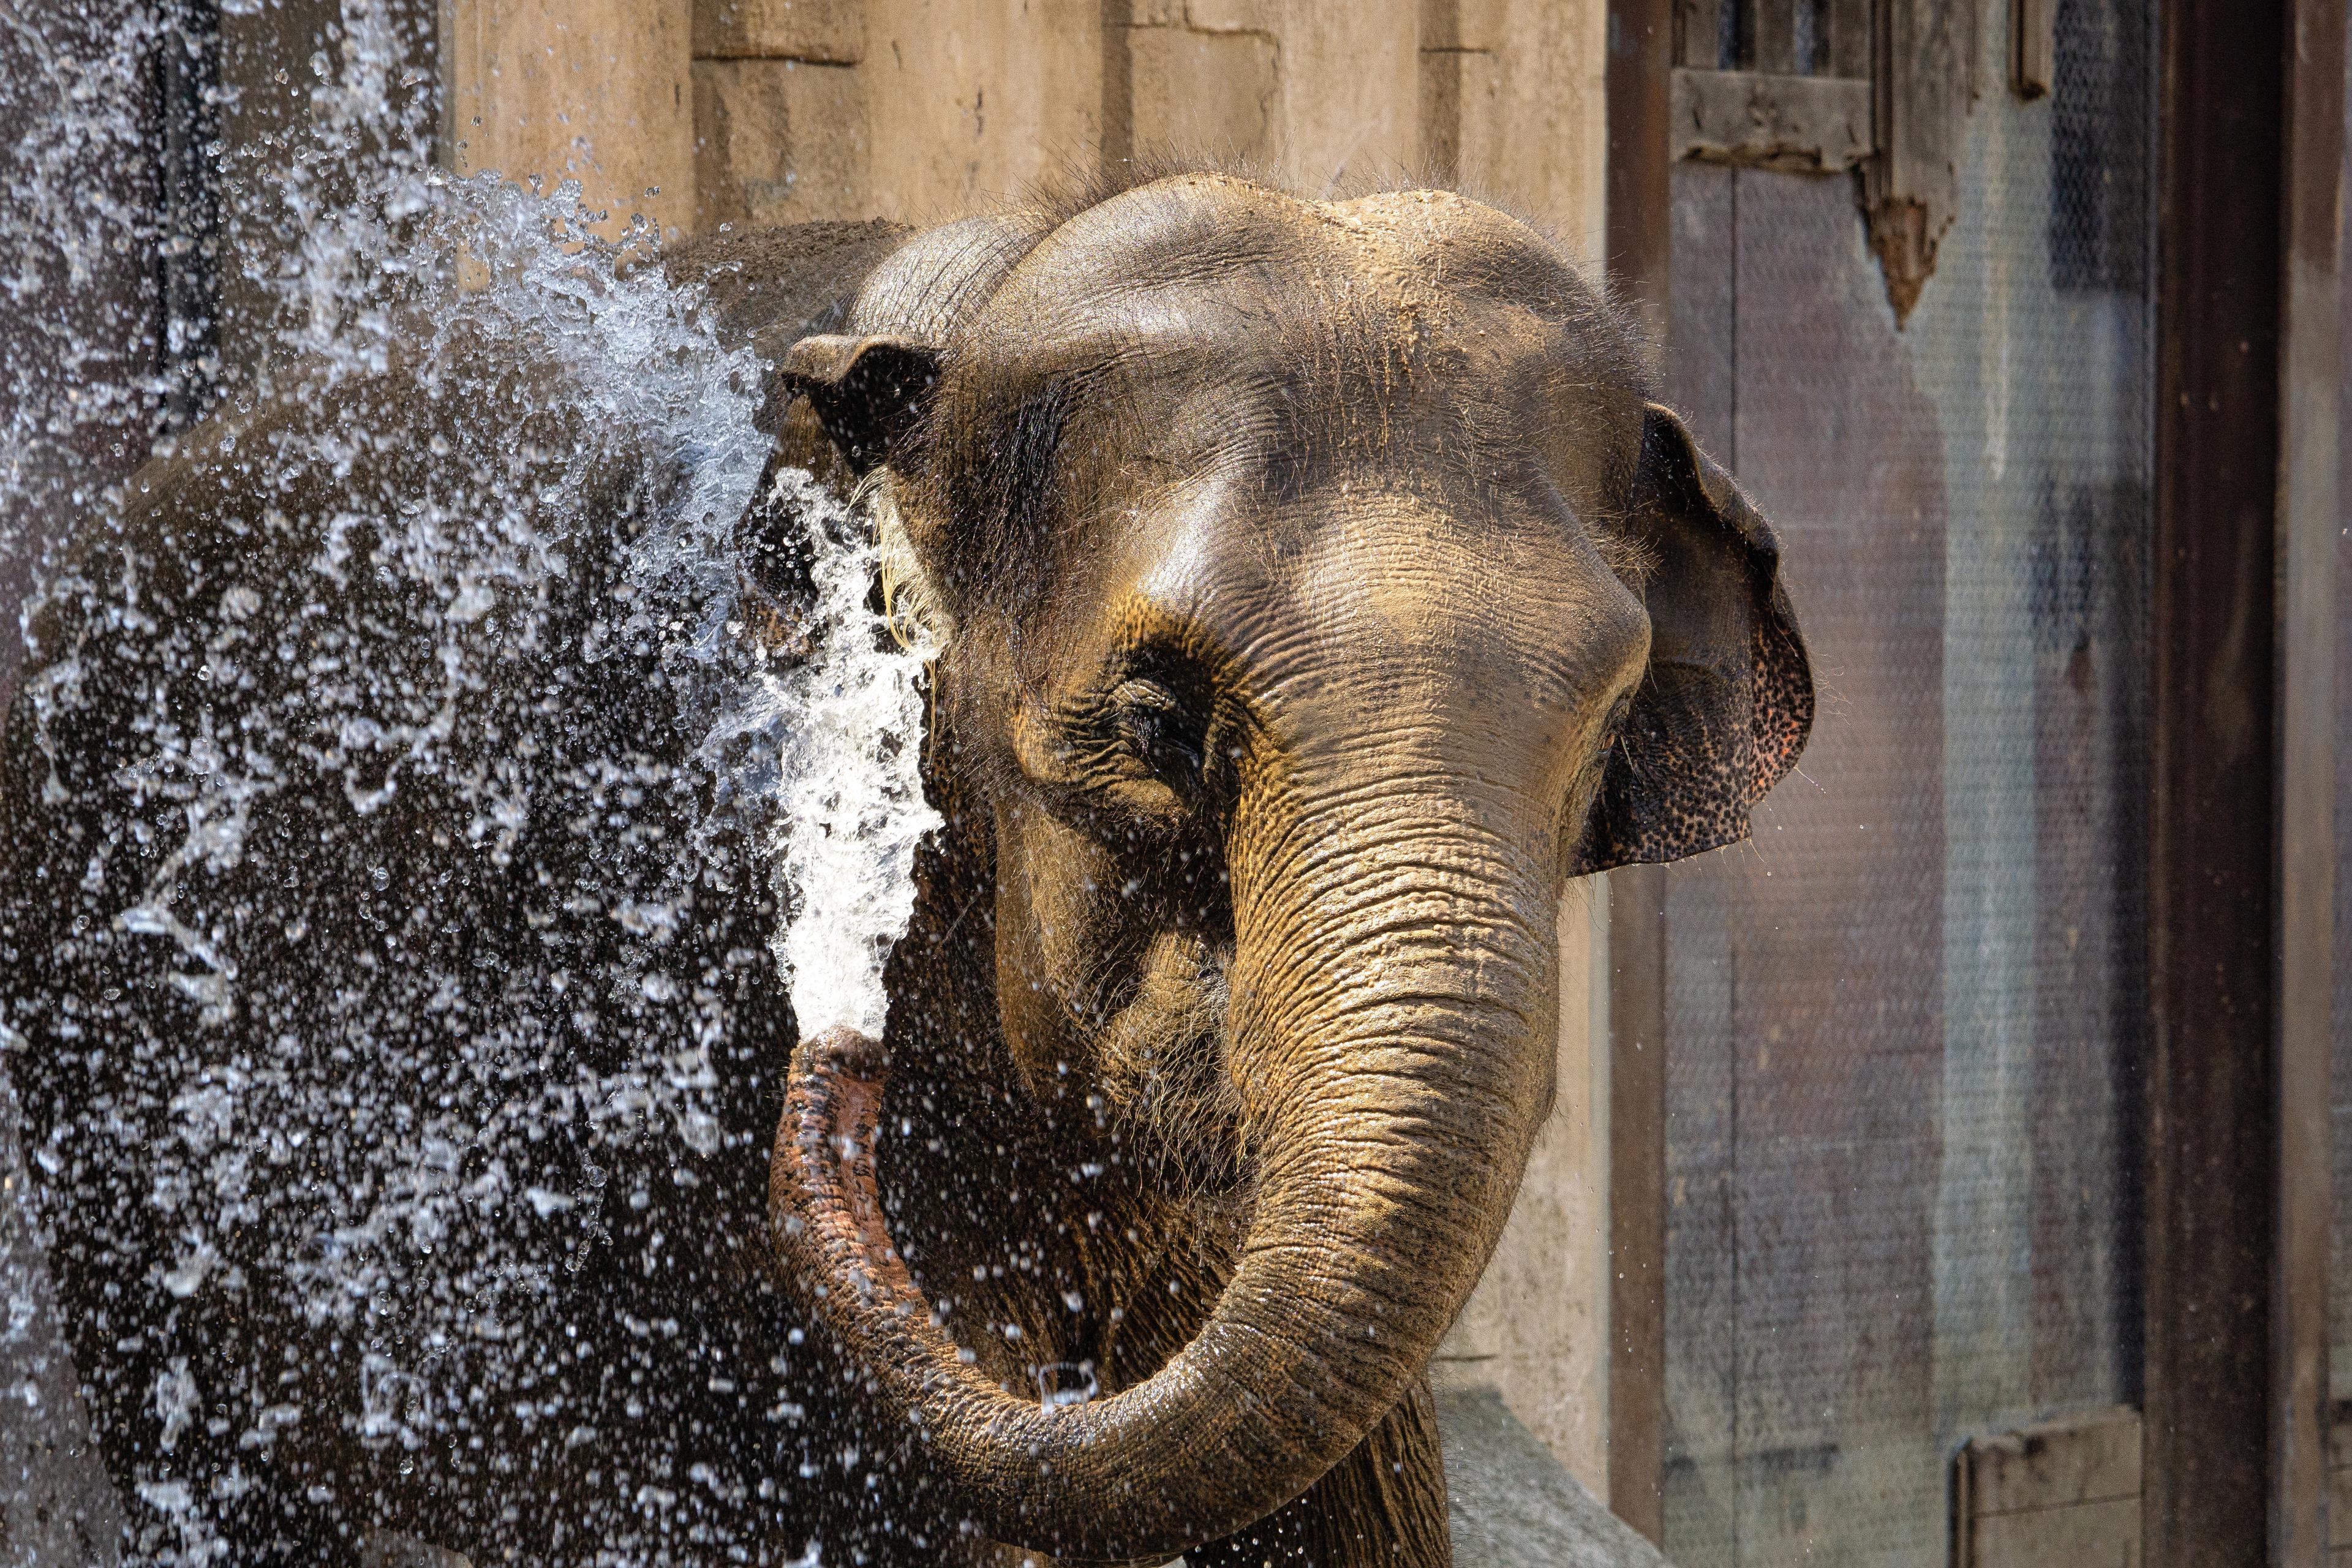 Elefant erfrischt sich selbst mit kühlem Wasser über den Rüssel